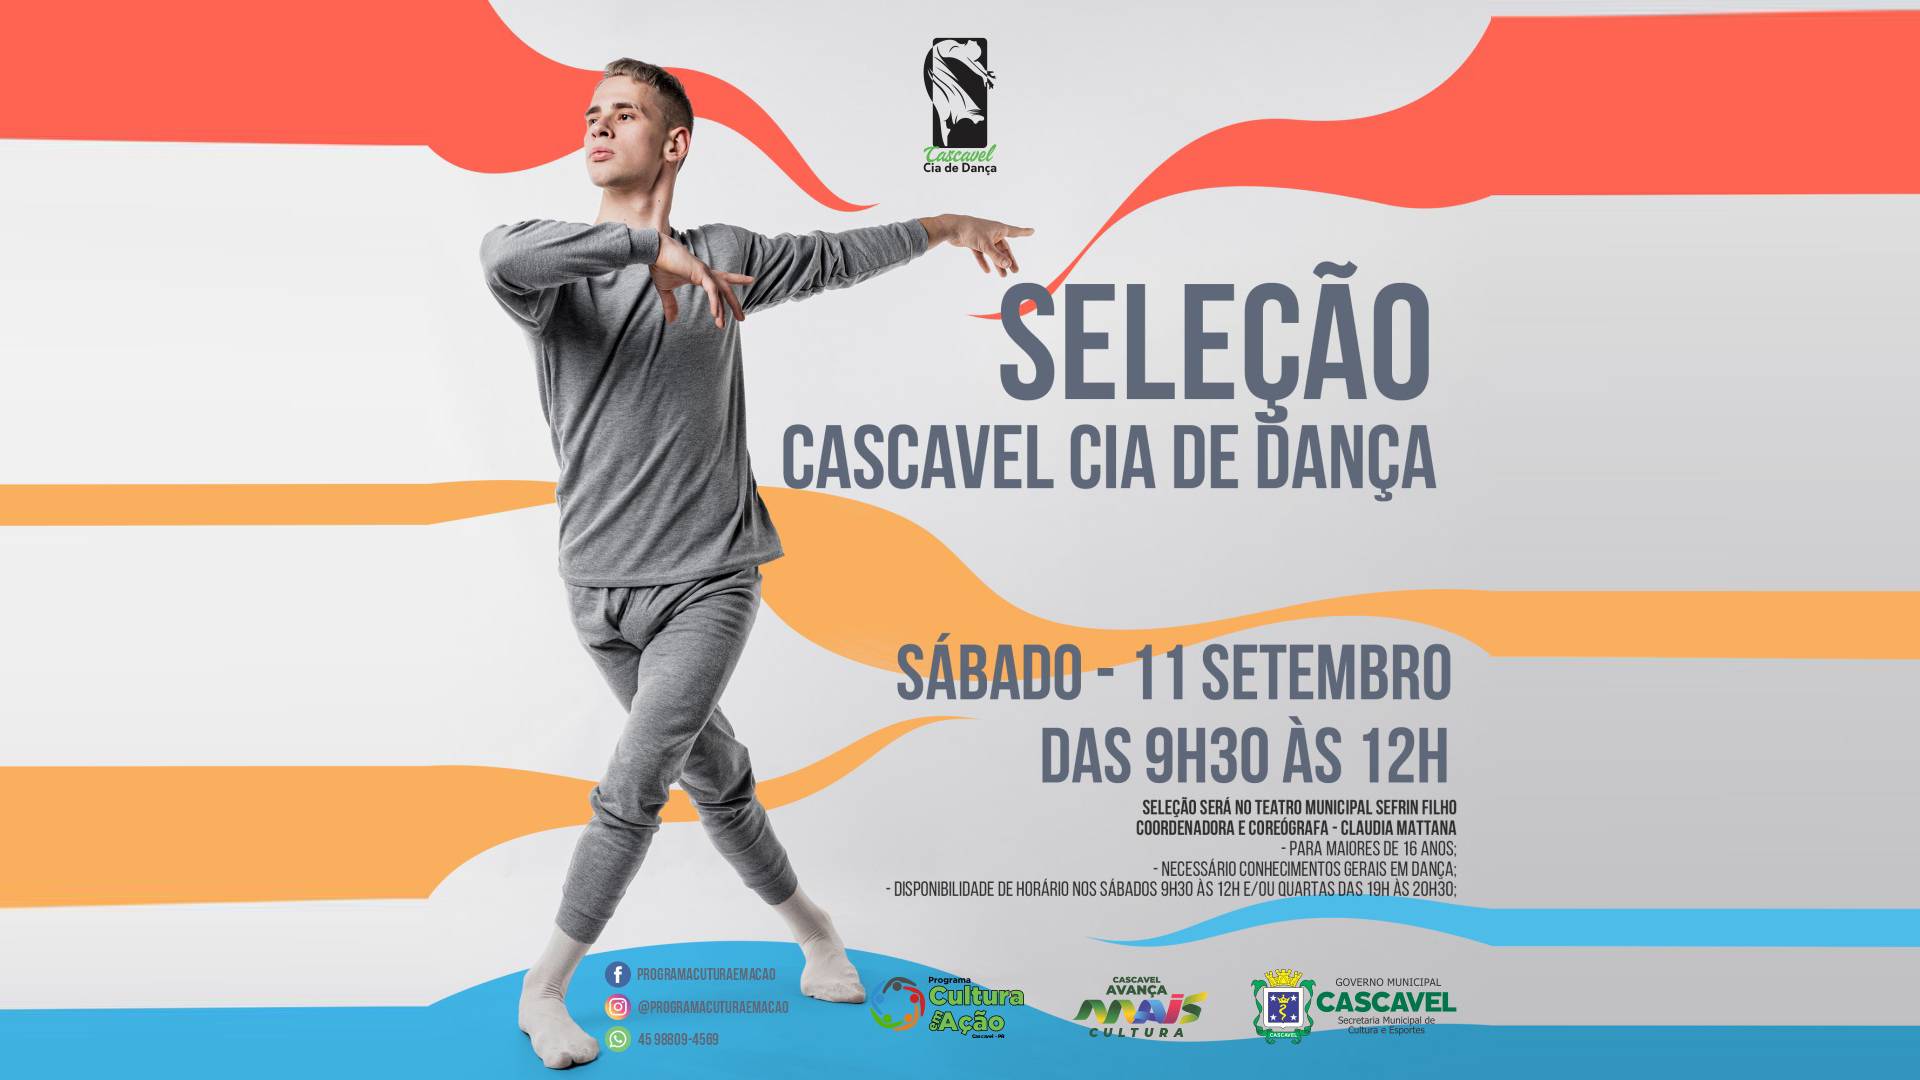 Cia de Dança de Cascavel promove seleção de dançarinos